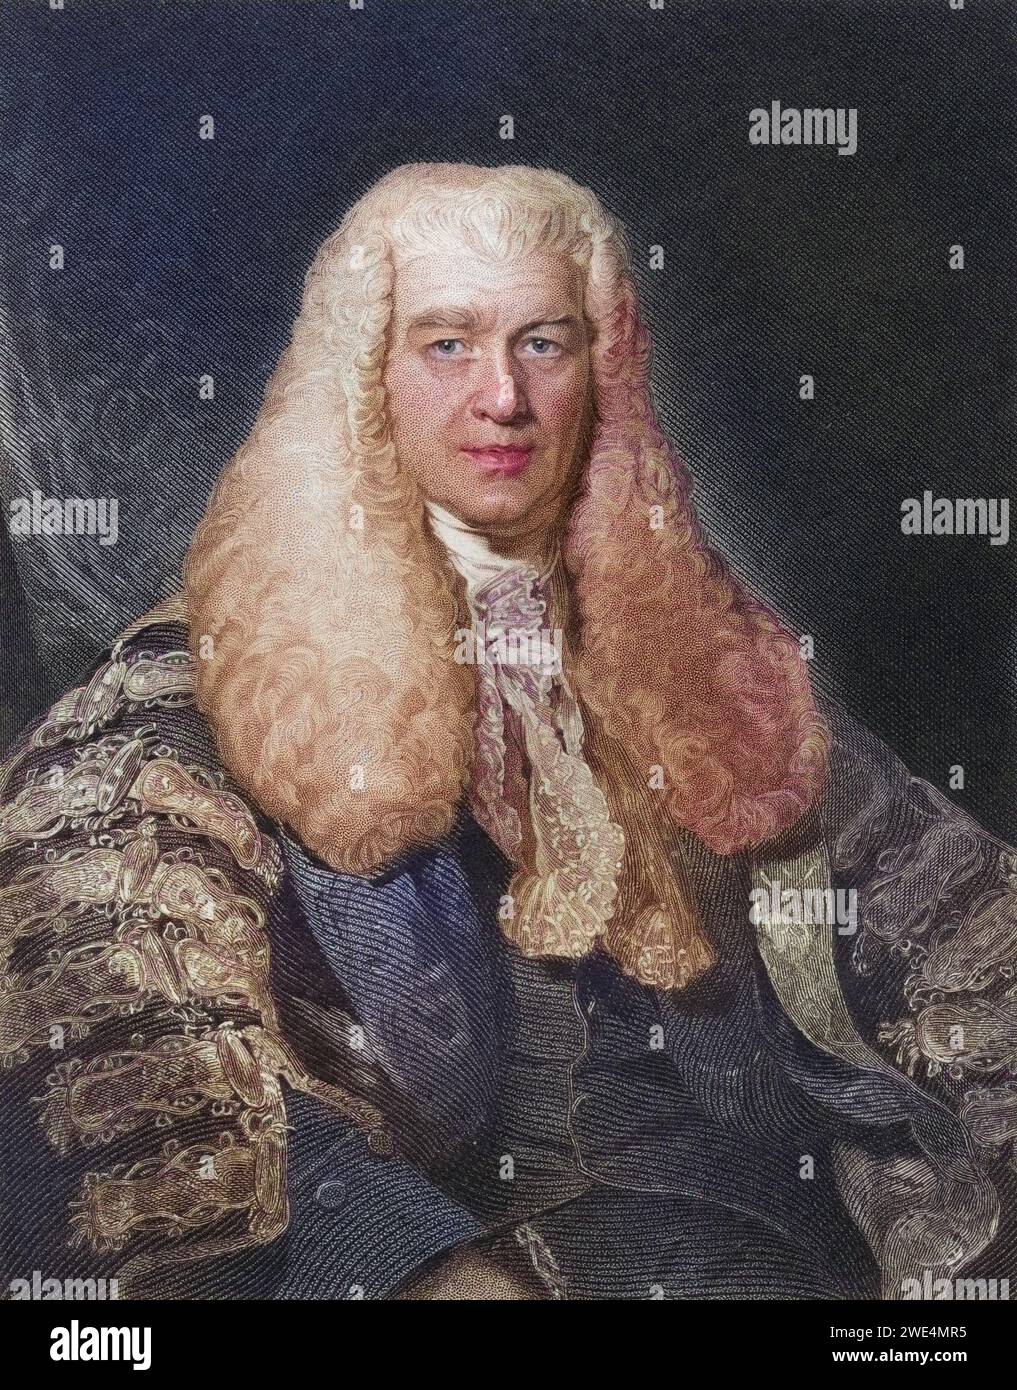 Sir Thomas Plumer 1753 to 1824 Master of the Rolls, Historisch, digital restaurierte Reproduktion von einer Vorlage aus dem 19. Jahrhundert, Record date not stated Stock Photo